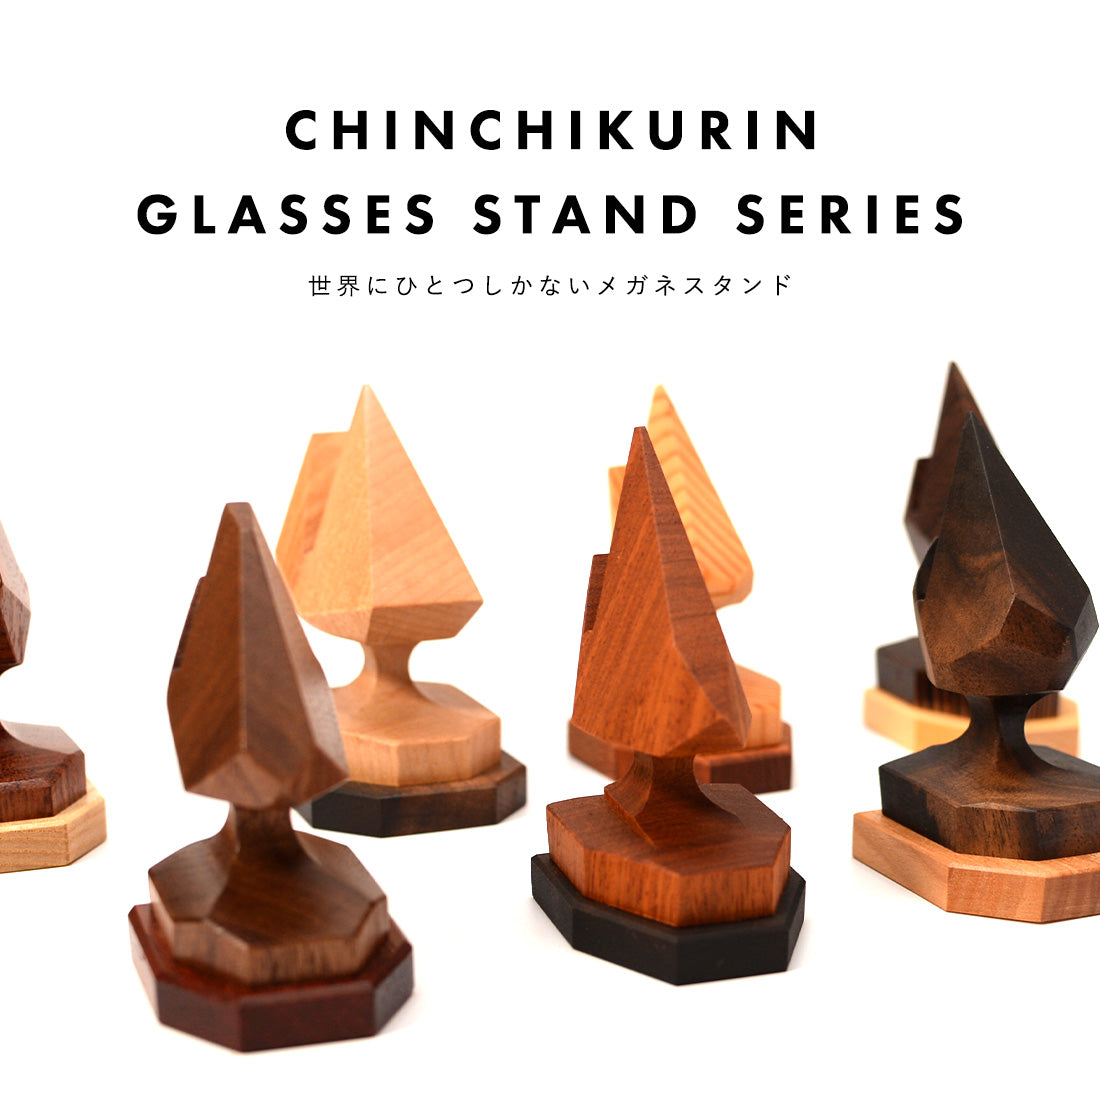 世界に一つの木製メガネスタンド CHINCHIKURIN 手作り おしゃれ ブビンガ・クロガキ